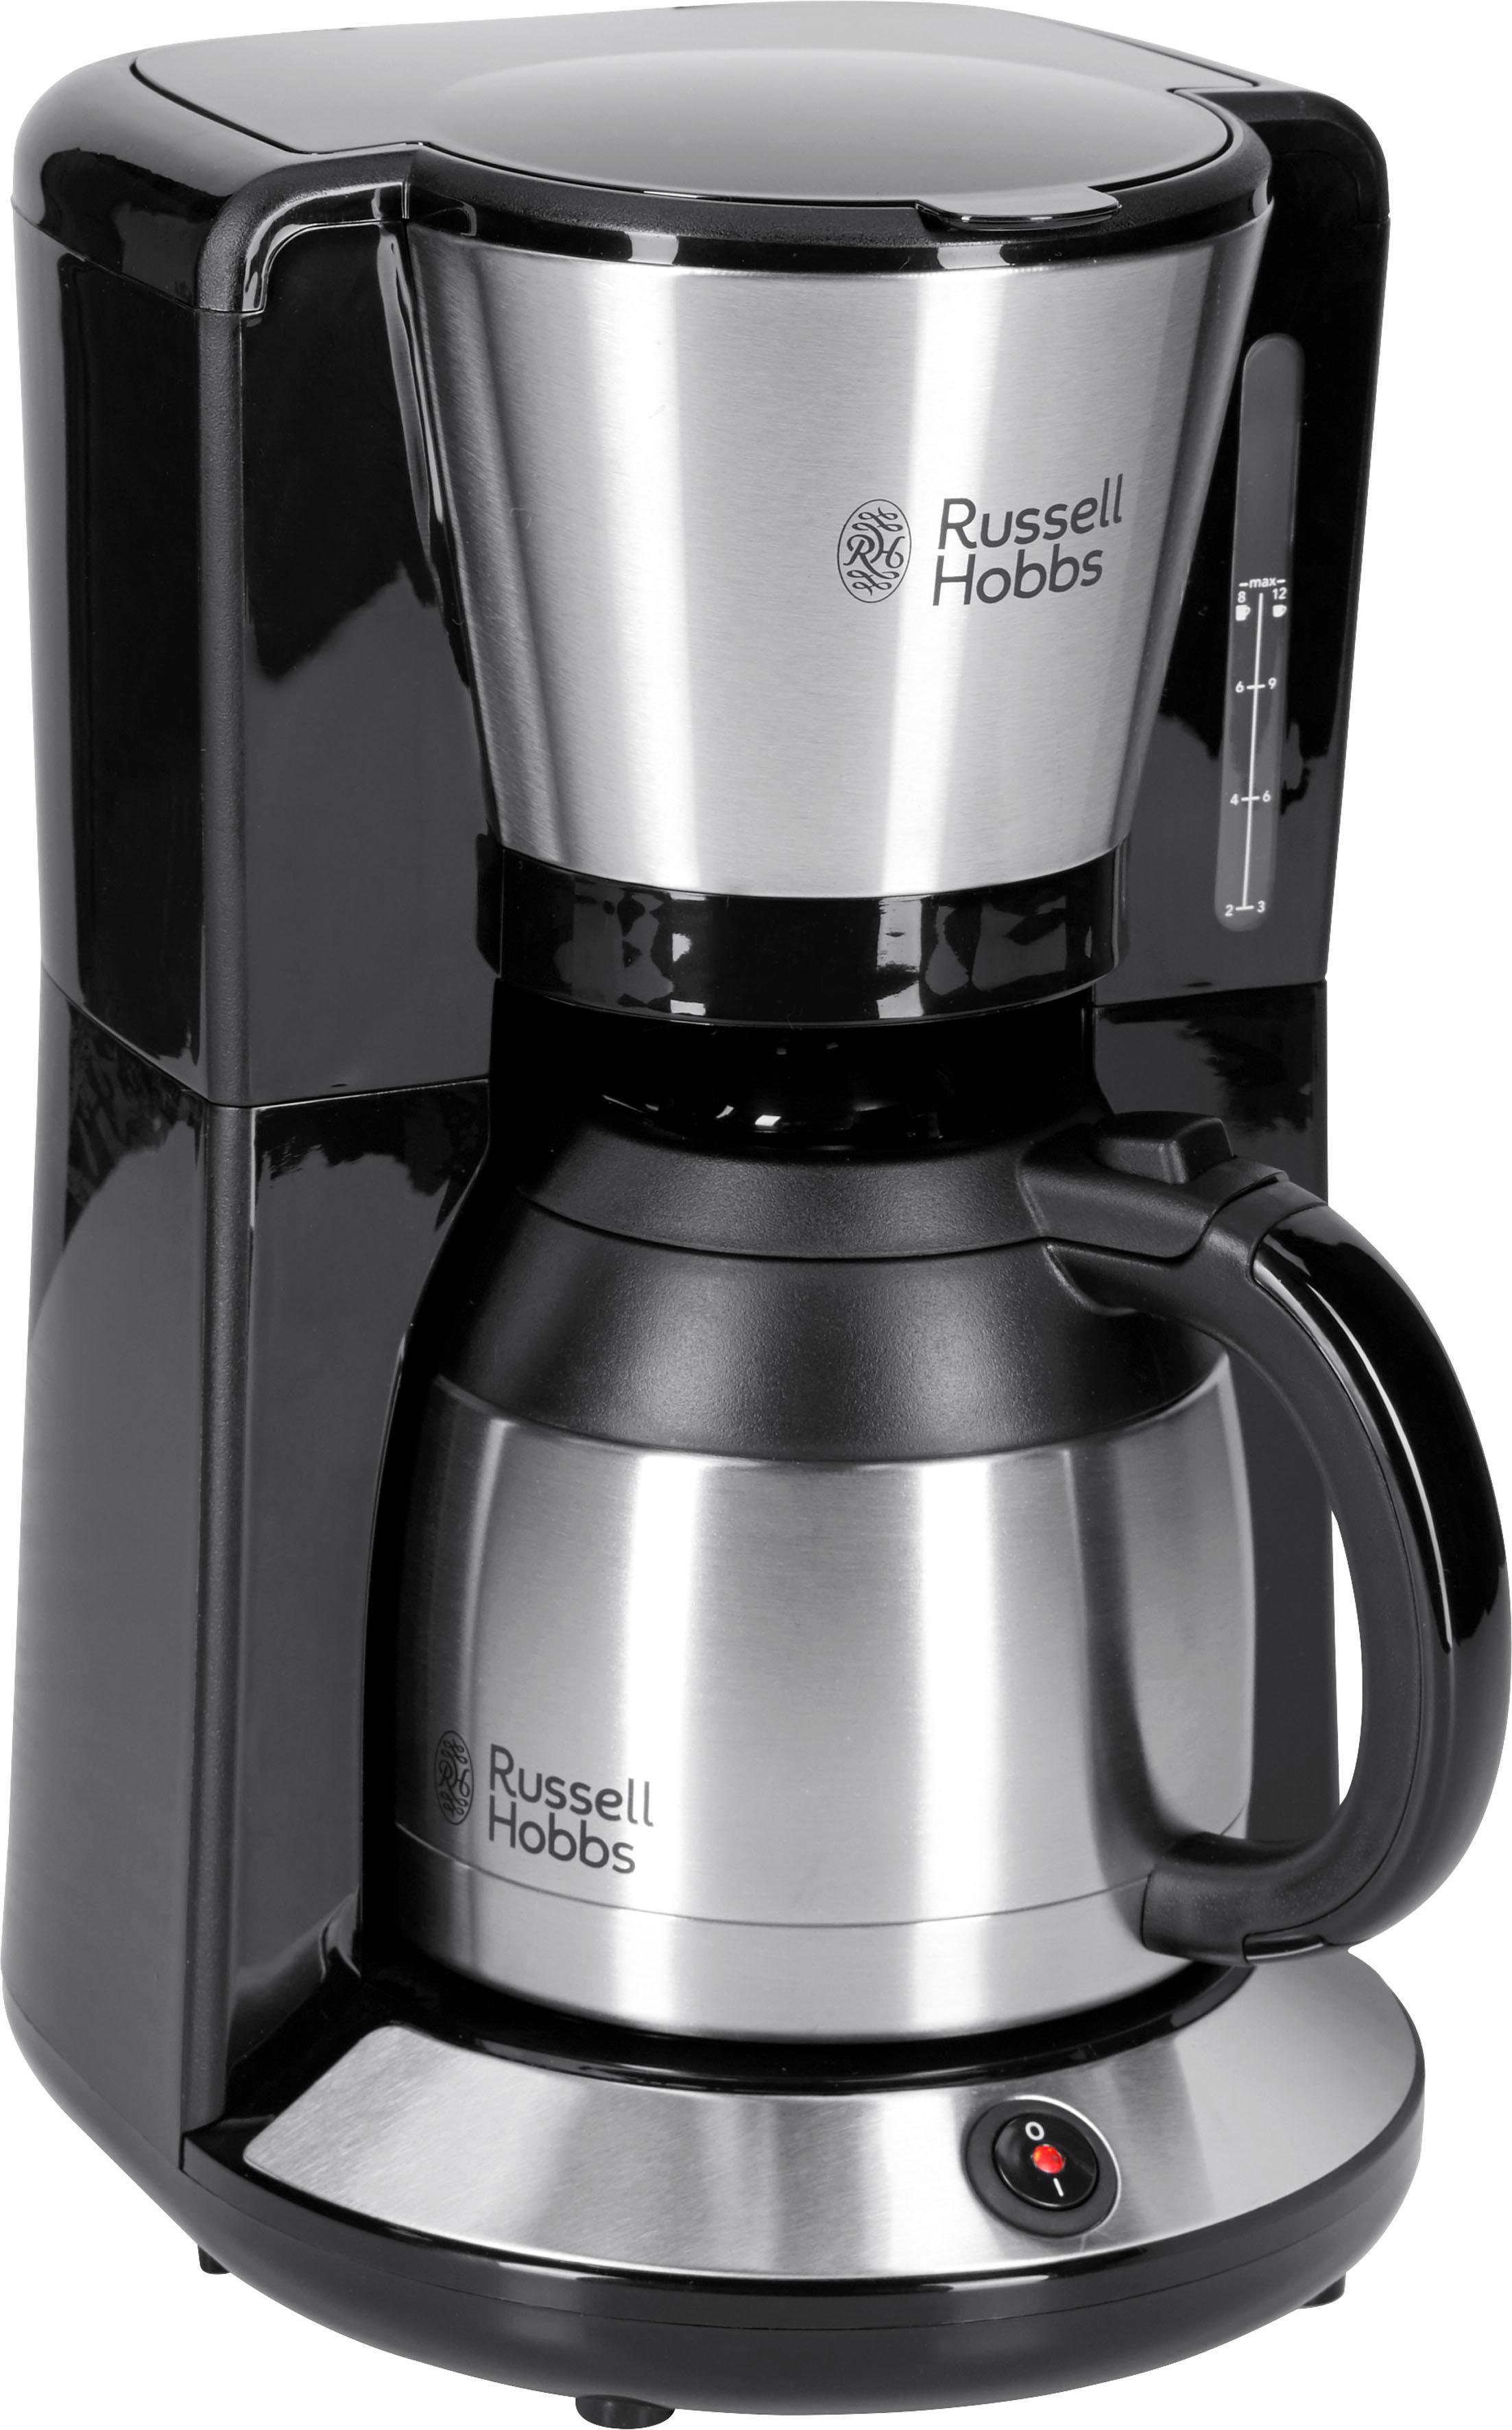 RUSSELL HOBBS Filterkaffeemaschine Adventure 24020-56, 1l Kaffeekanne, Papierfilter  1x4, mit Thermokanne, 1100 Watt, Edelstahl gebürstet,  WhirlTech-Brühtechnologie – für ein hervorragendes Aroma